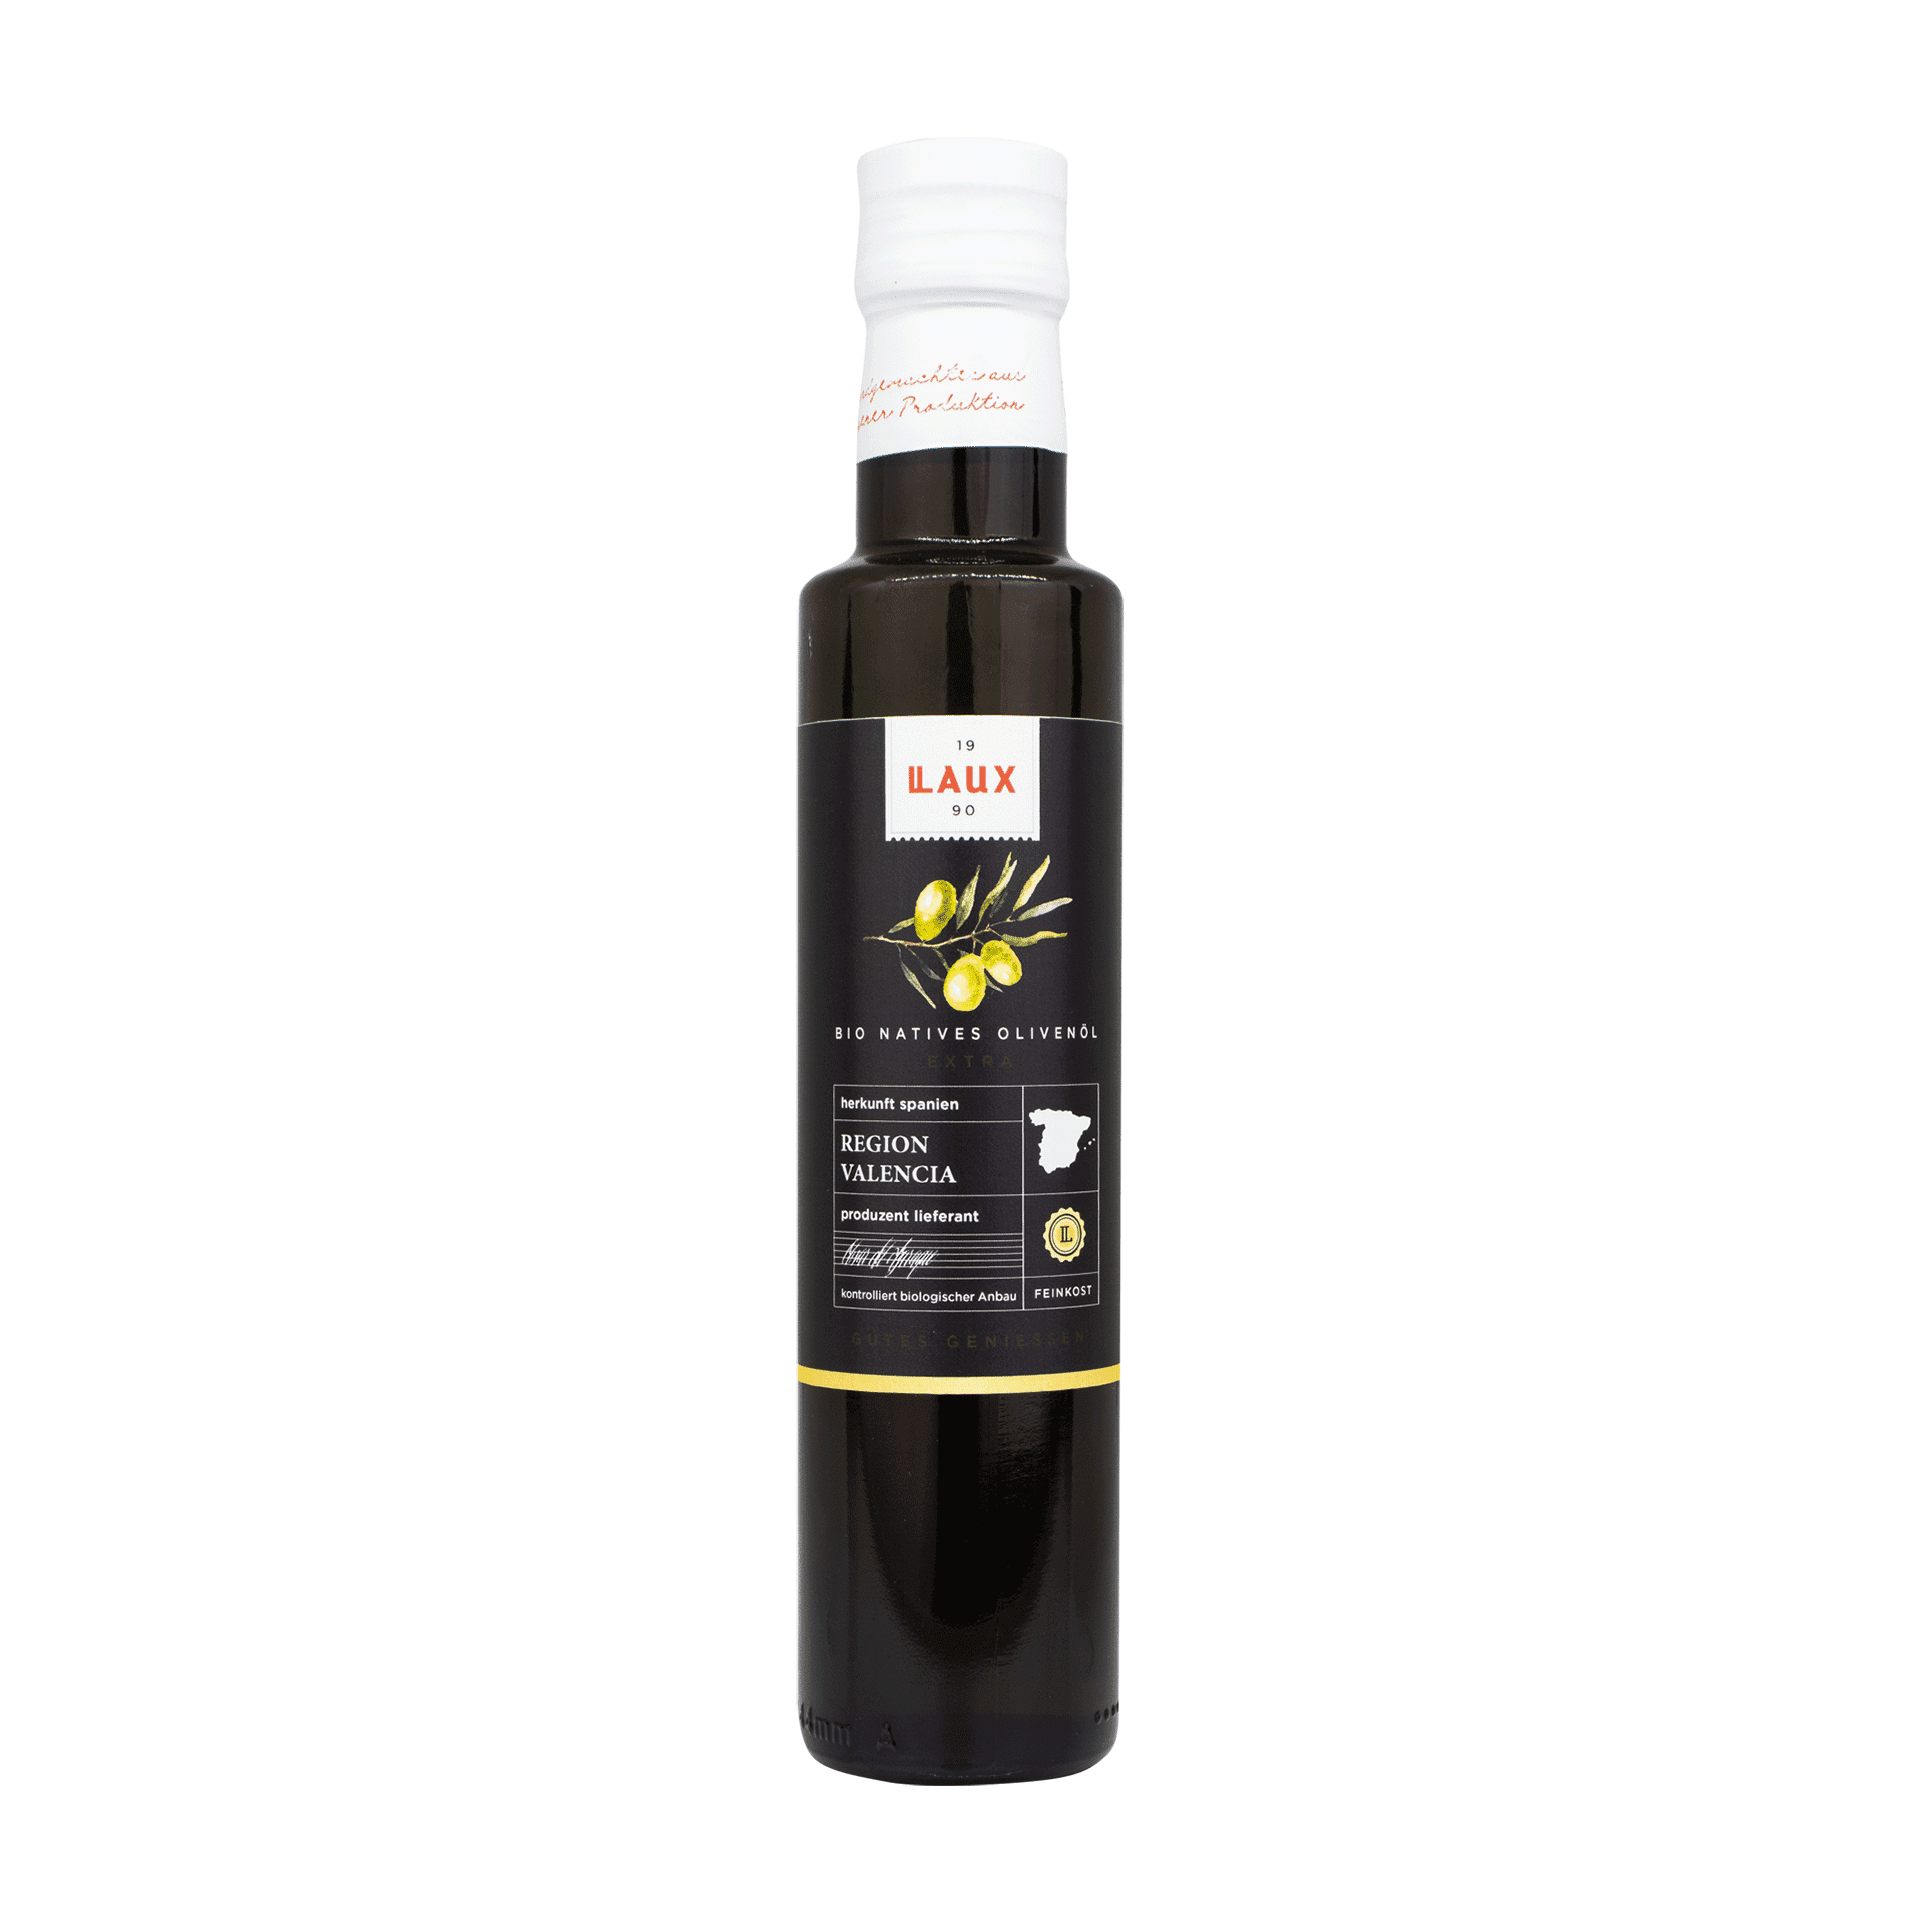 LAUX Olivenöl extra virgin in 250ml Flasche